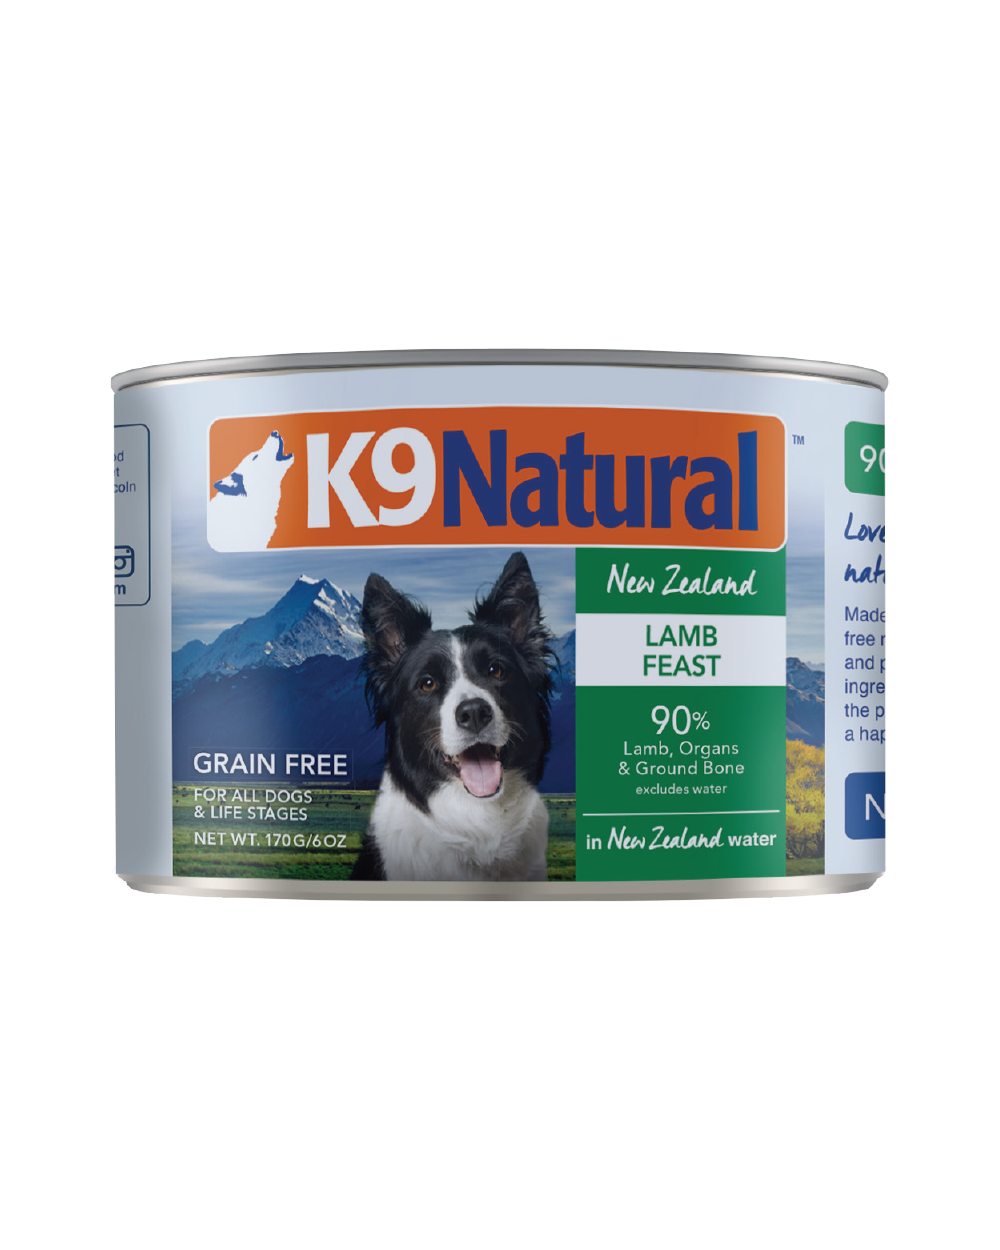 K9 Natural - Wet Dog Food - ARMOR THE POOCH